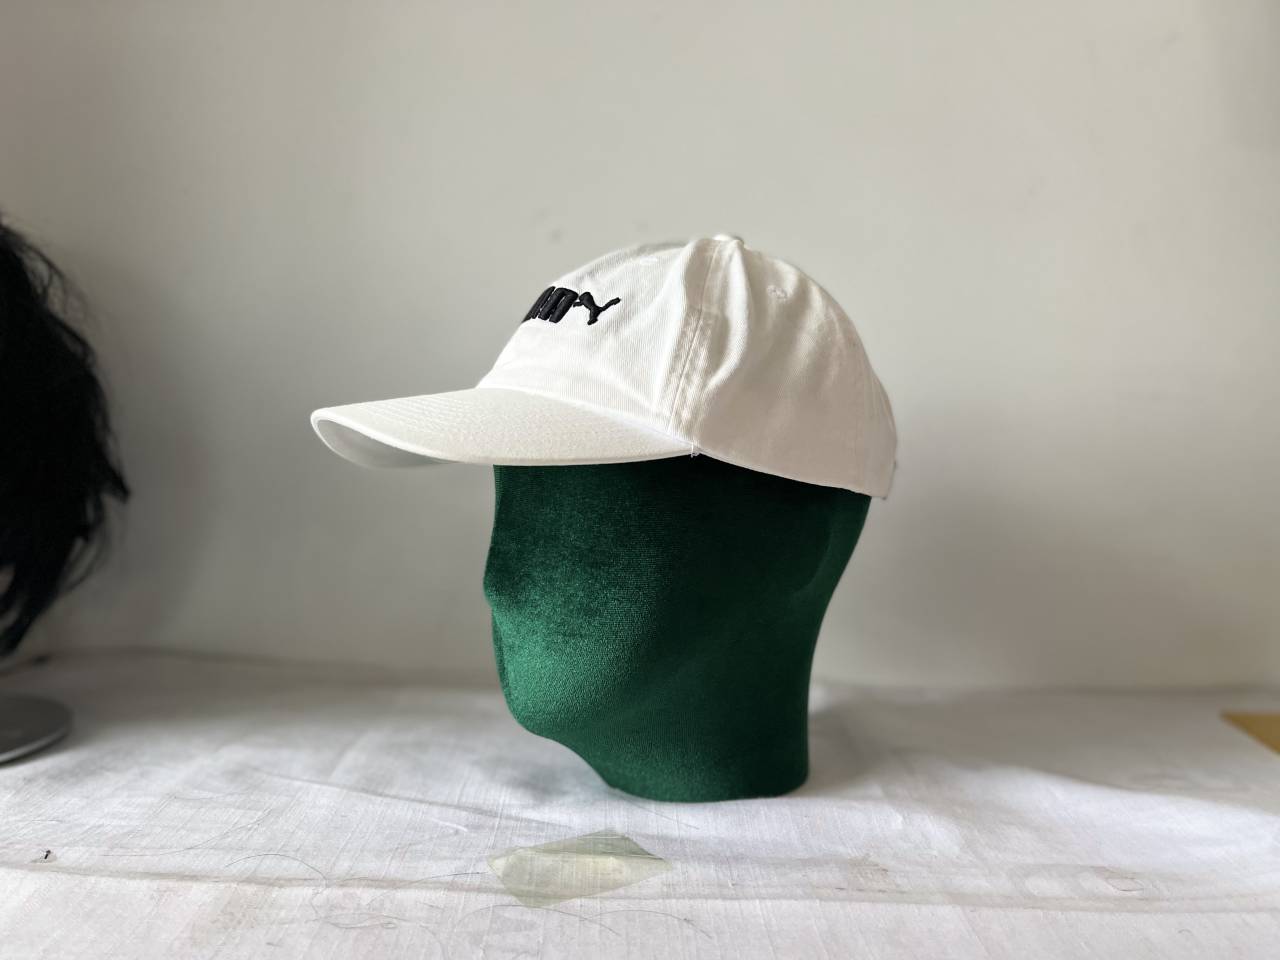 Głowa manekina z zielonego aksamitu do ekspozycji białych czapek